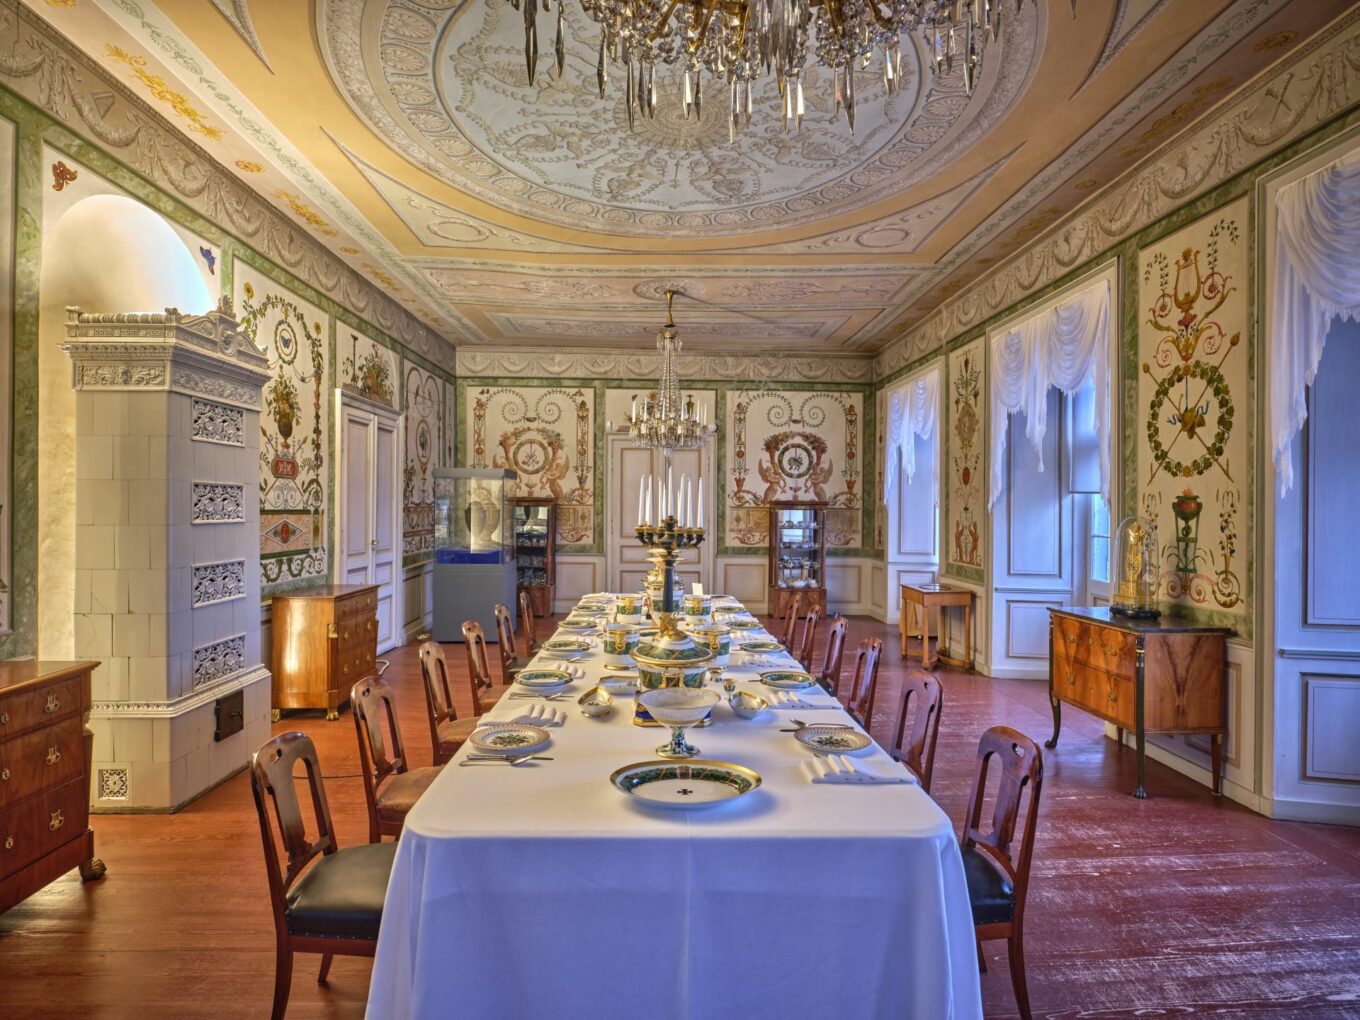 Bad Homburg Palace, dining room of Landgravine Elizabeth